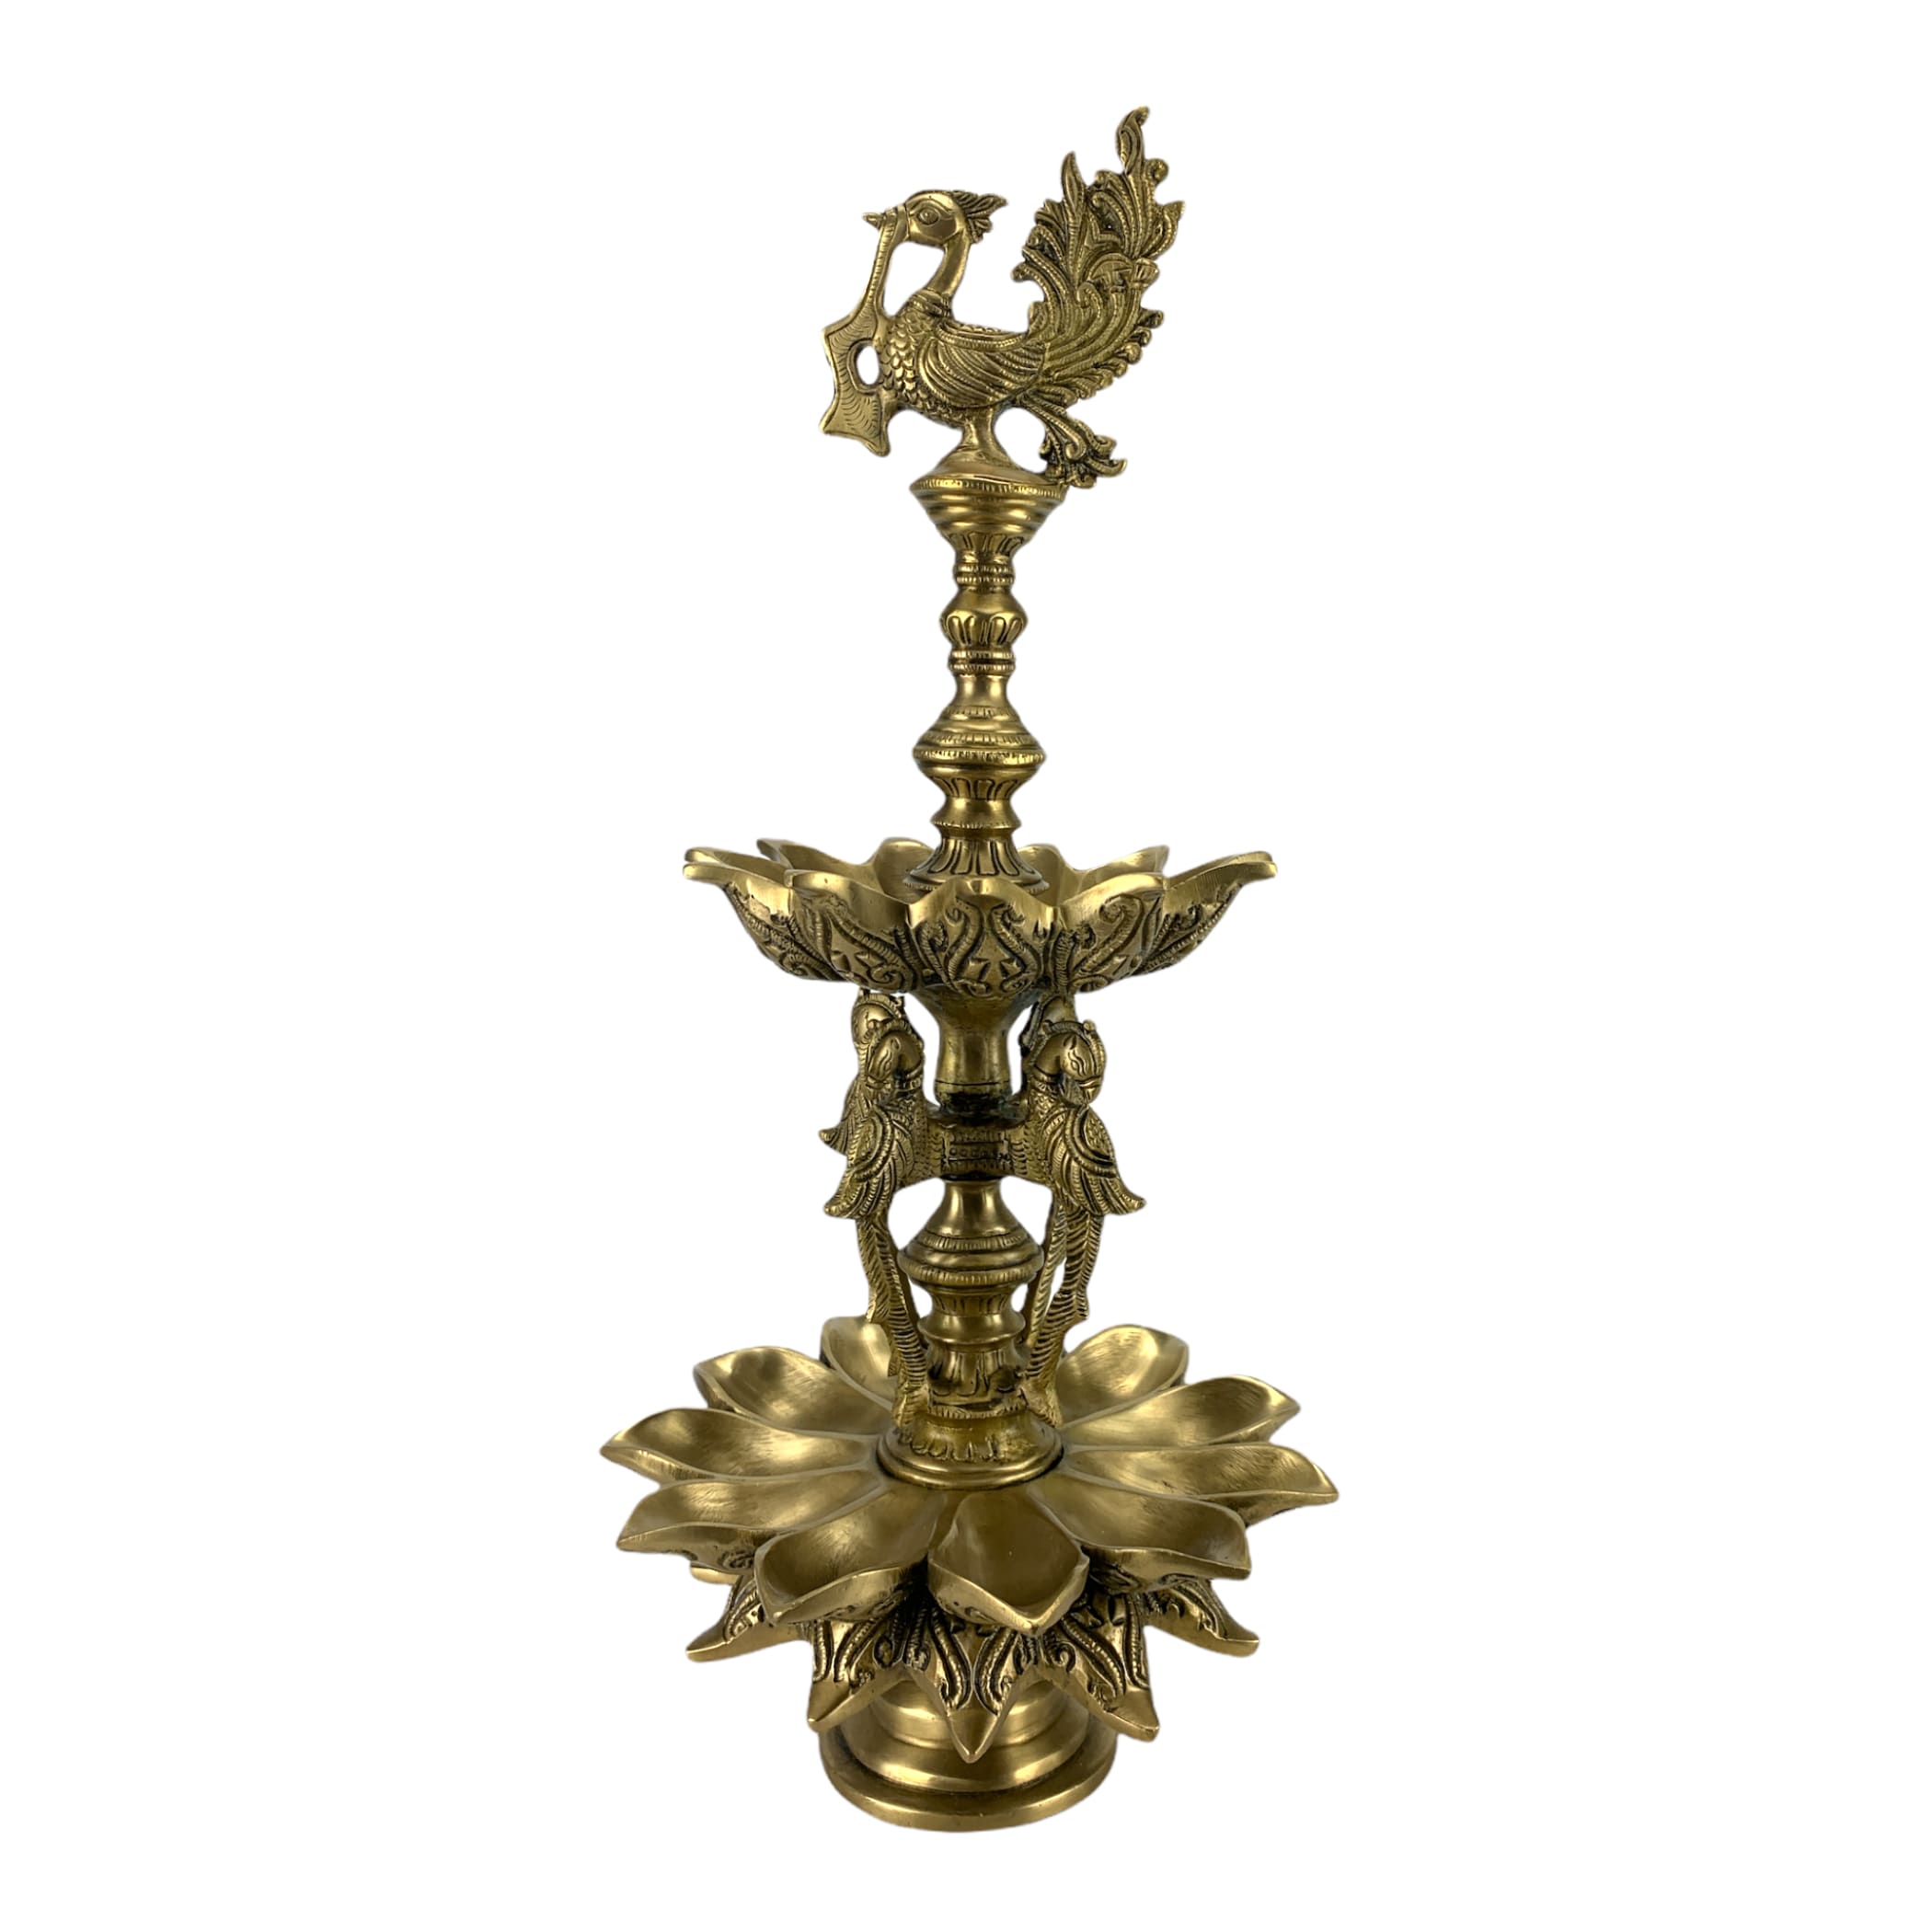 Xlarge peacock brass oil tall diya samai diwali decor lamp